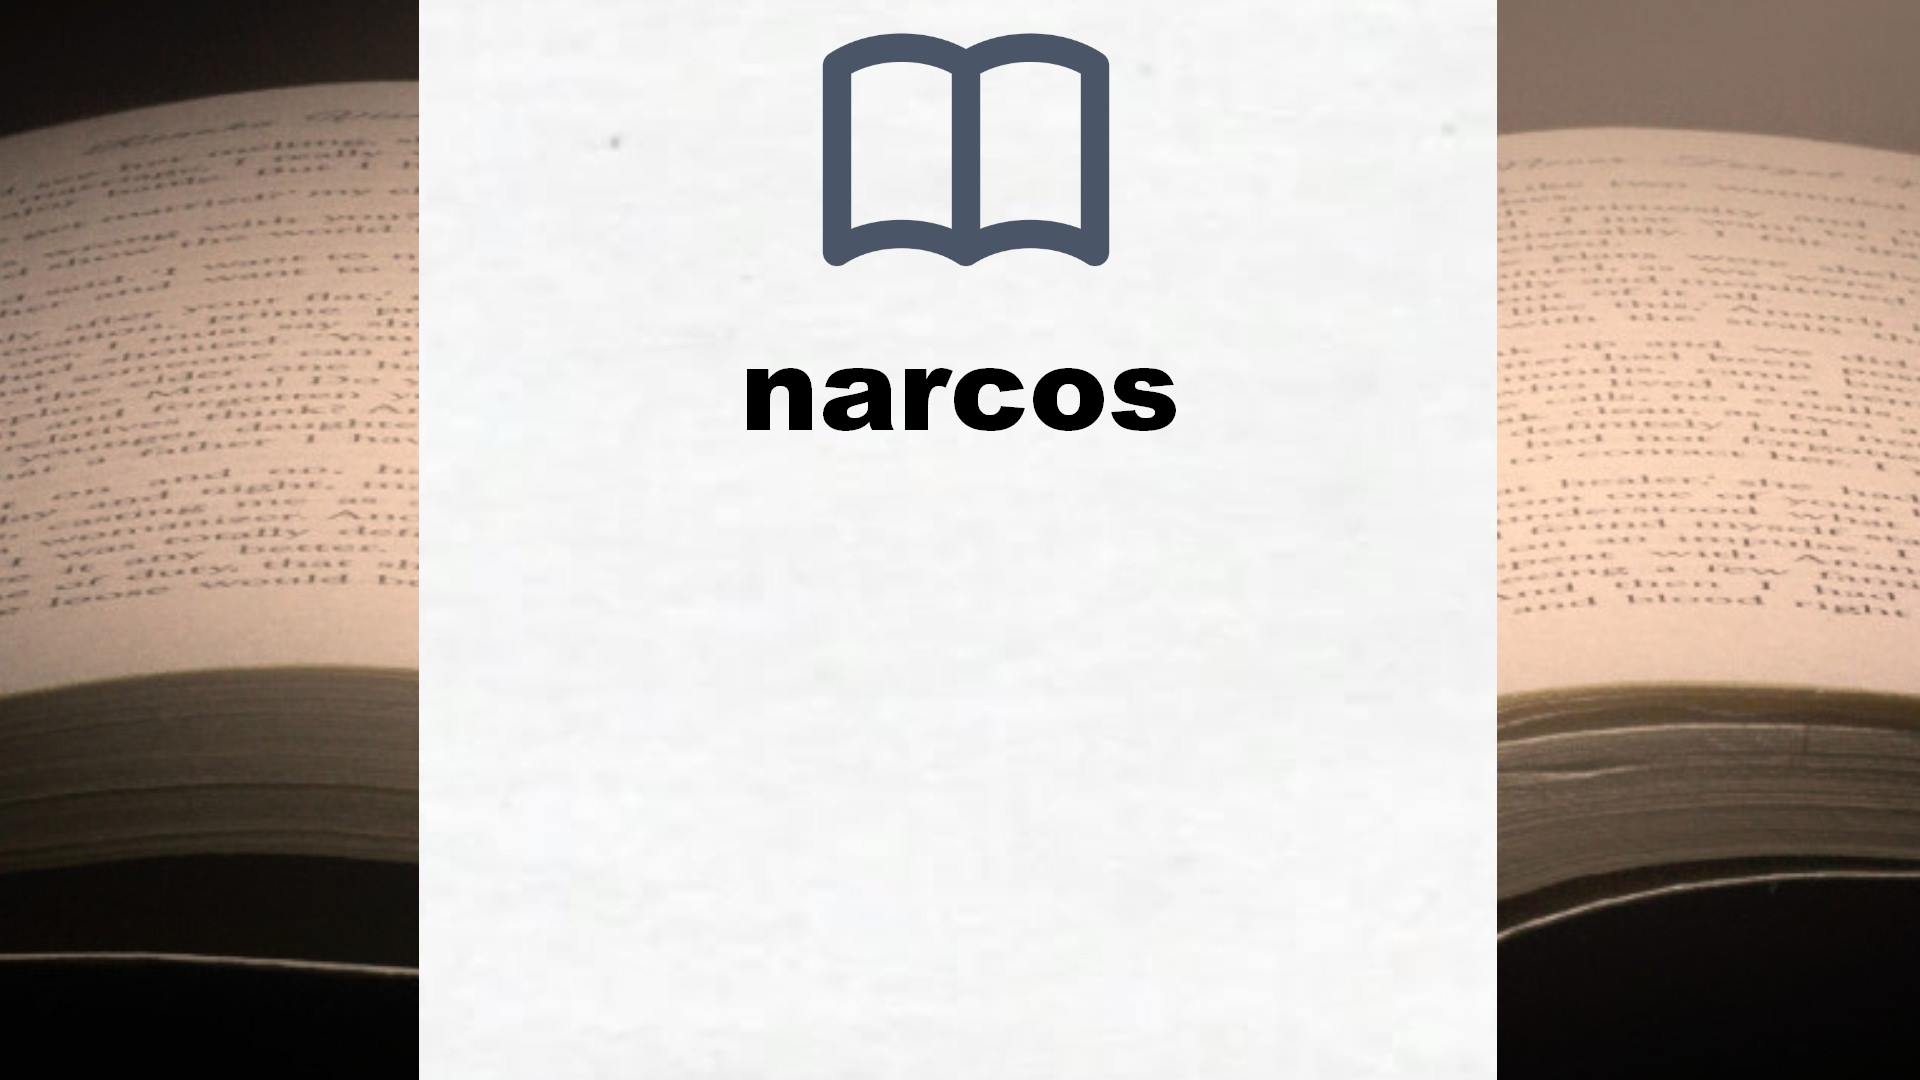 Libros sobre narcos